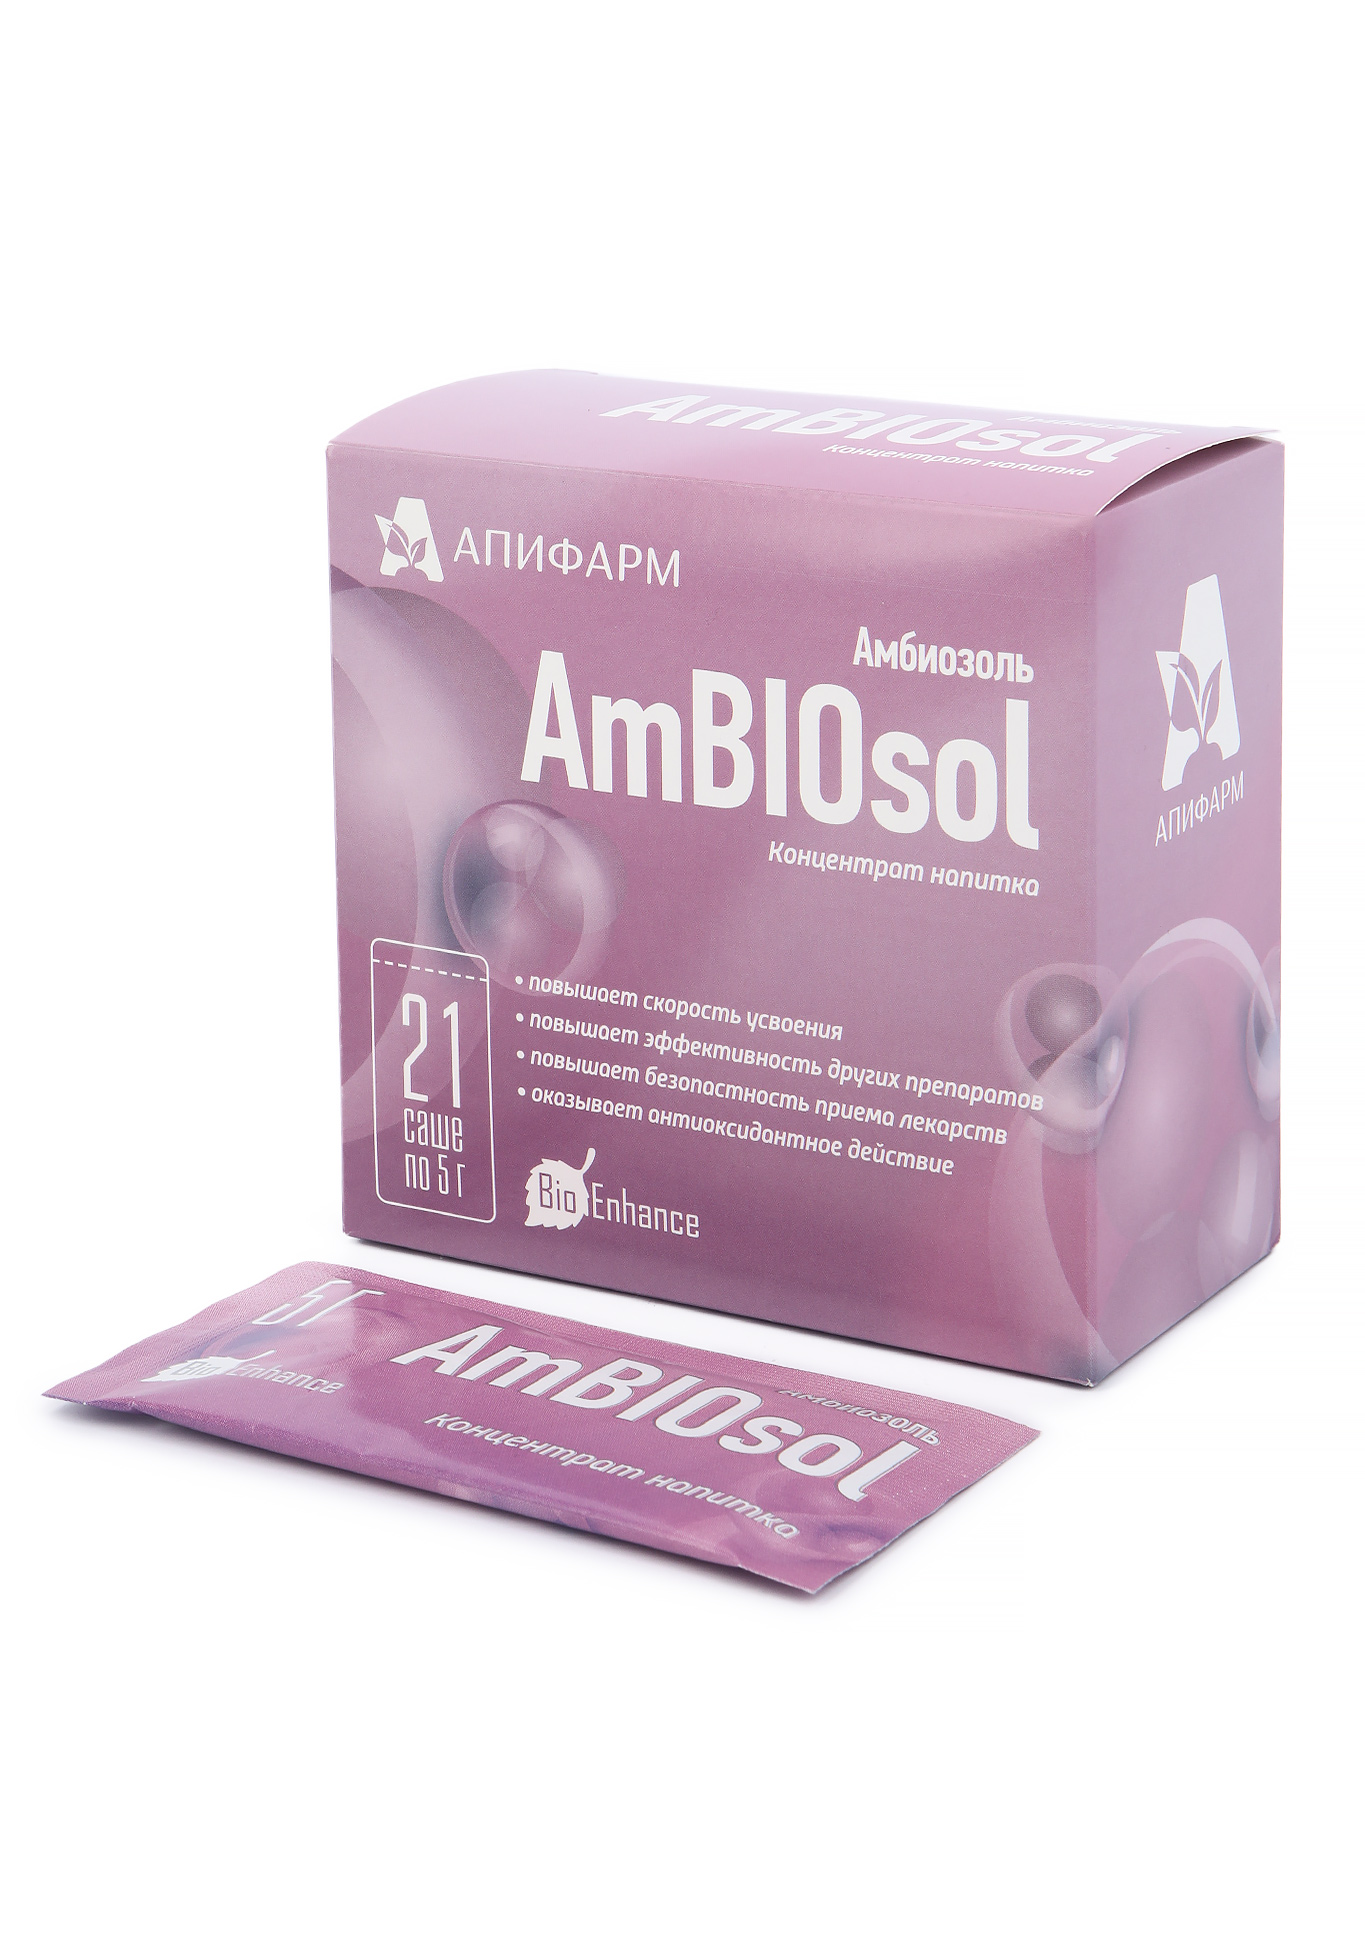 АмБИОзоль, концентрат напитка Апифарм - фото 1